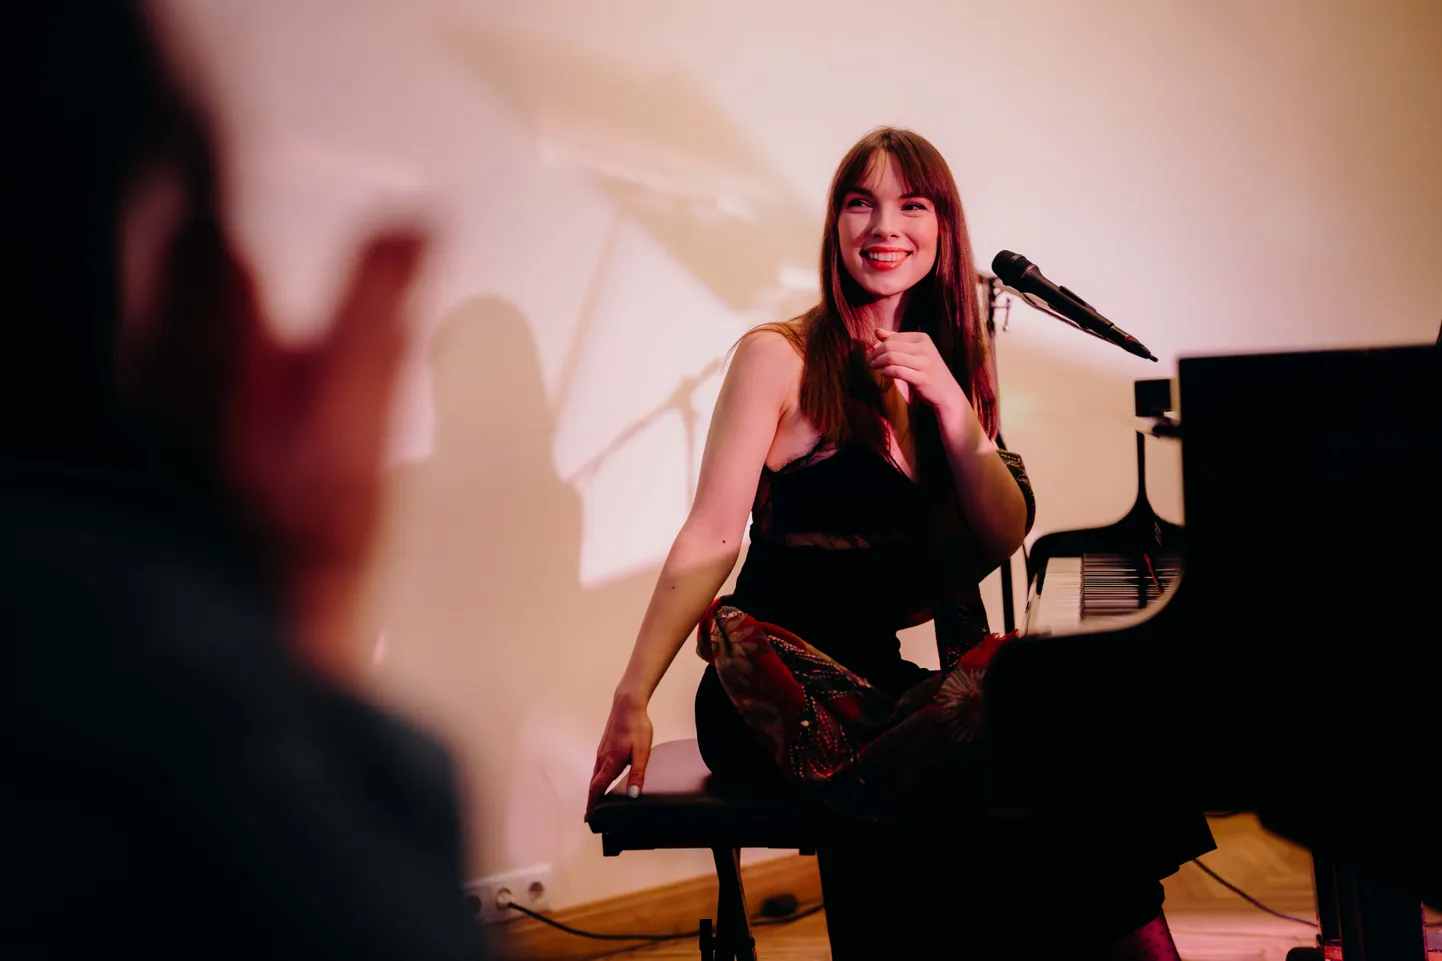 Катрина Гупало выступила в клубе "Страздумуйжа" - главном центре культурной жизни в Риге для людей с нарушениями зрения